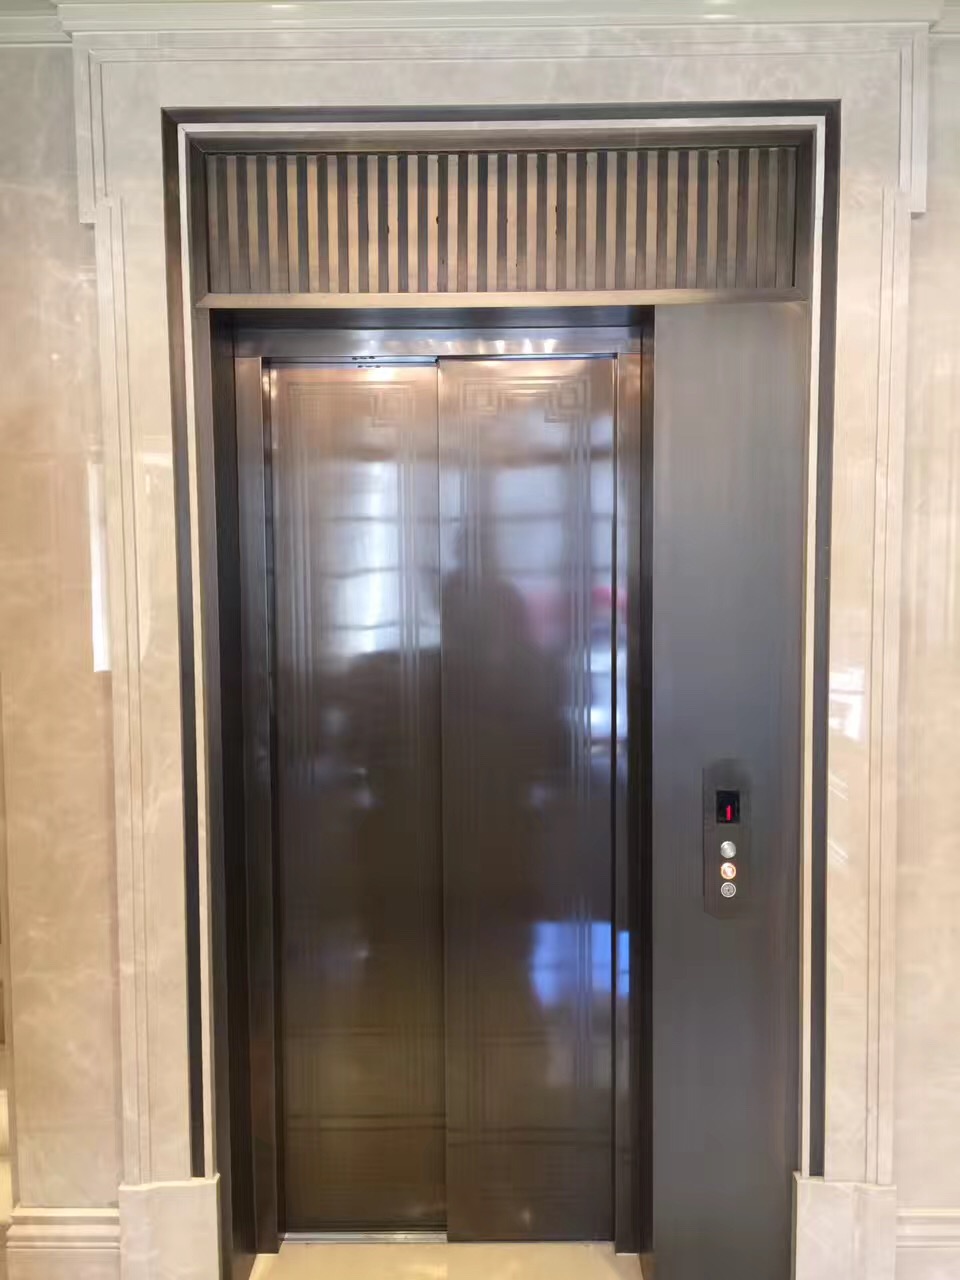 北京家用电梯乘客电梯